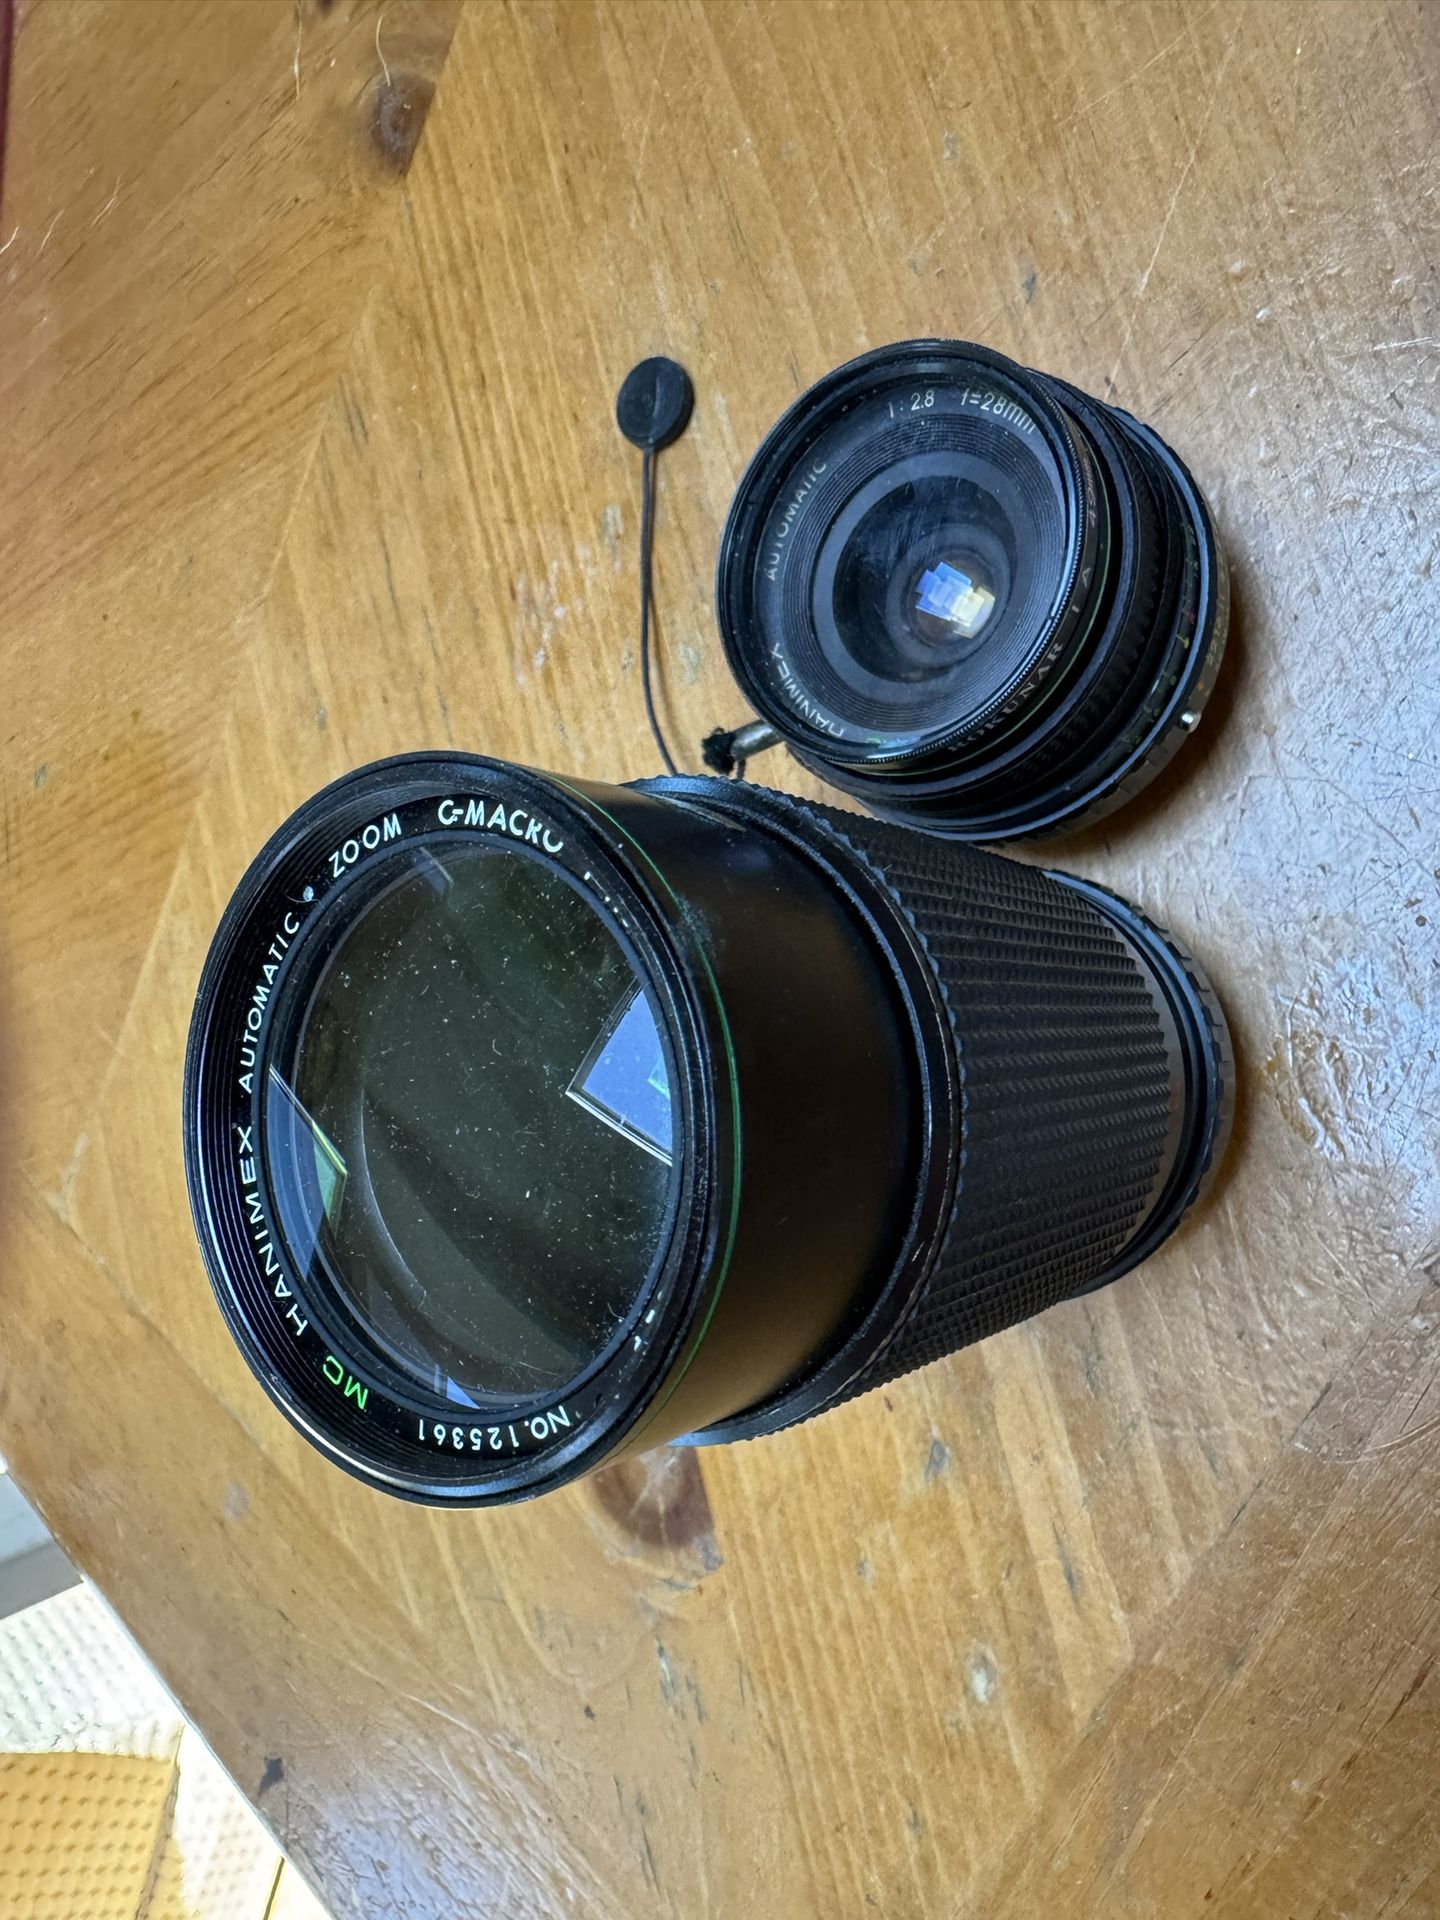 2 Hanimex Camera lenses